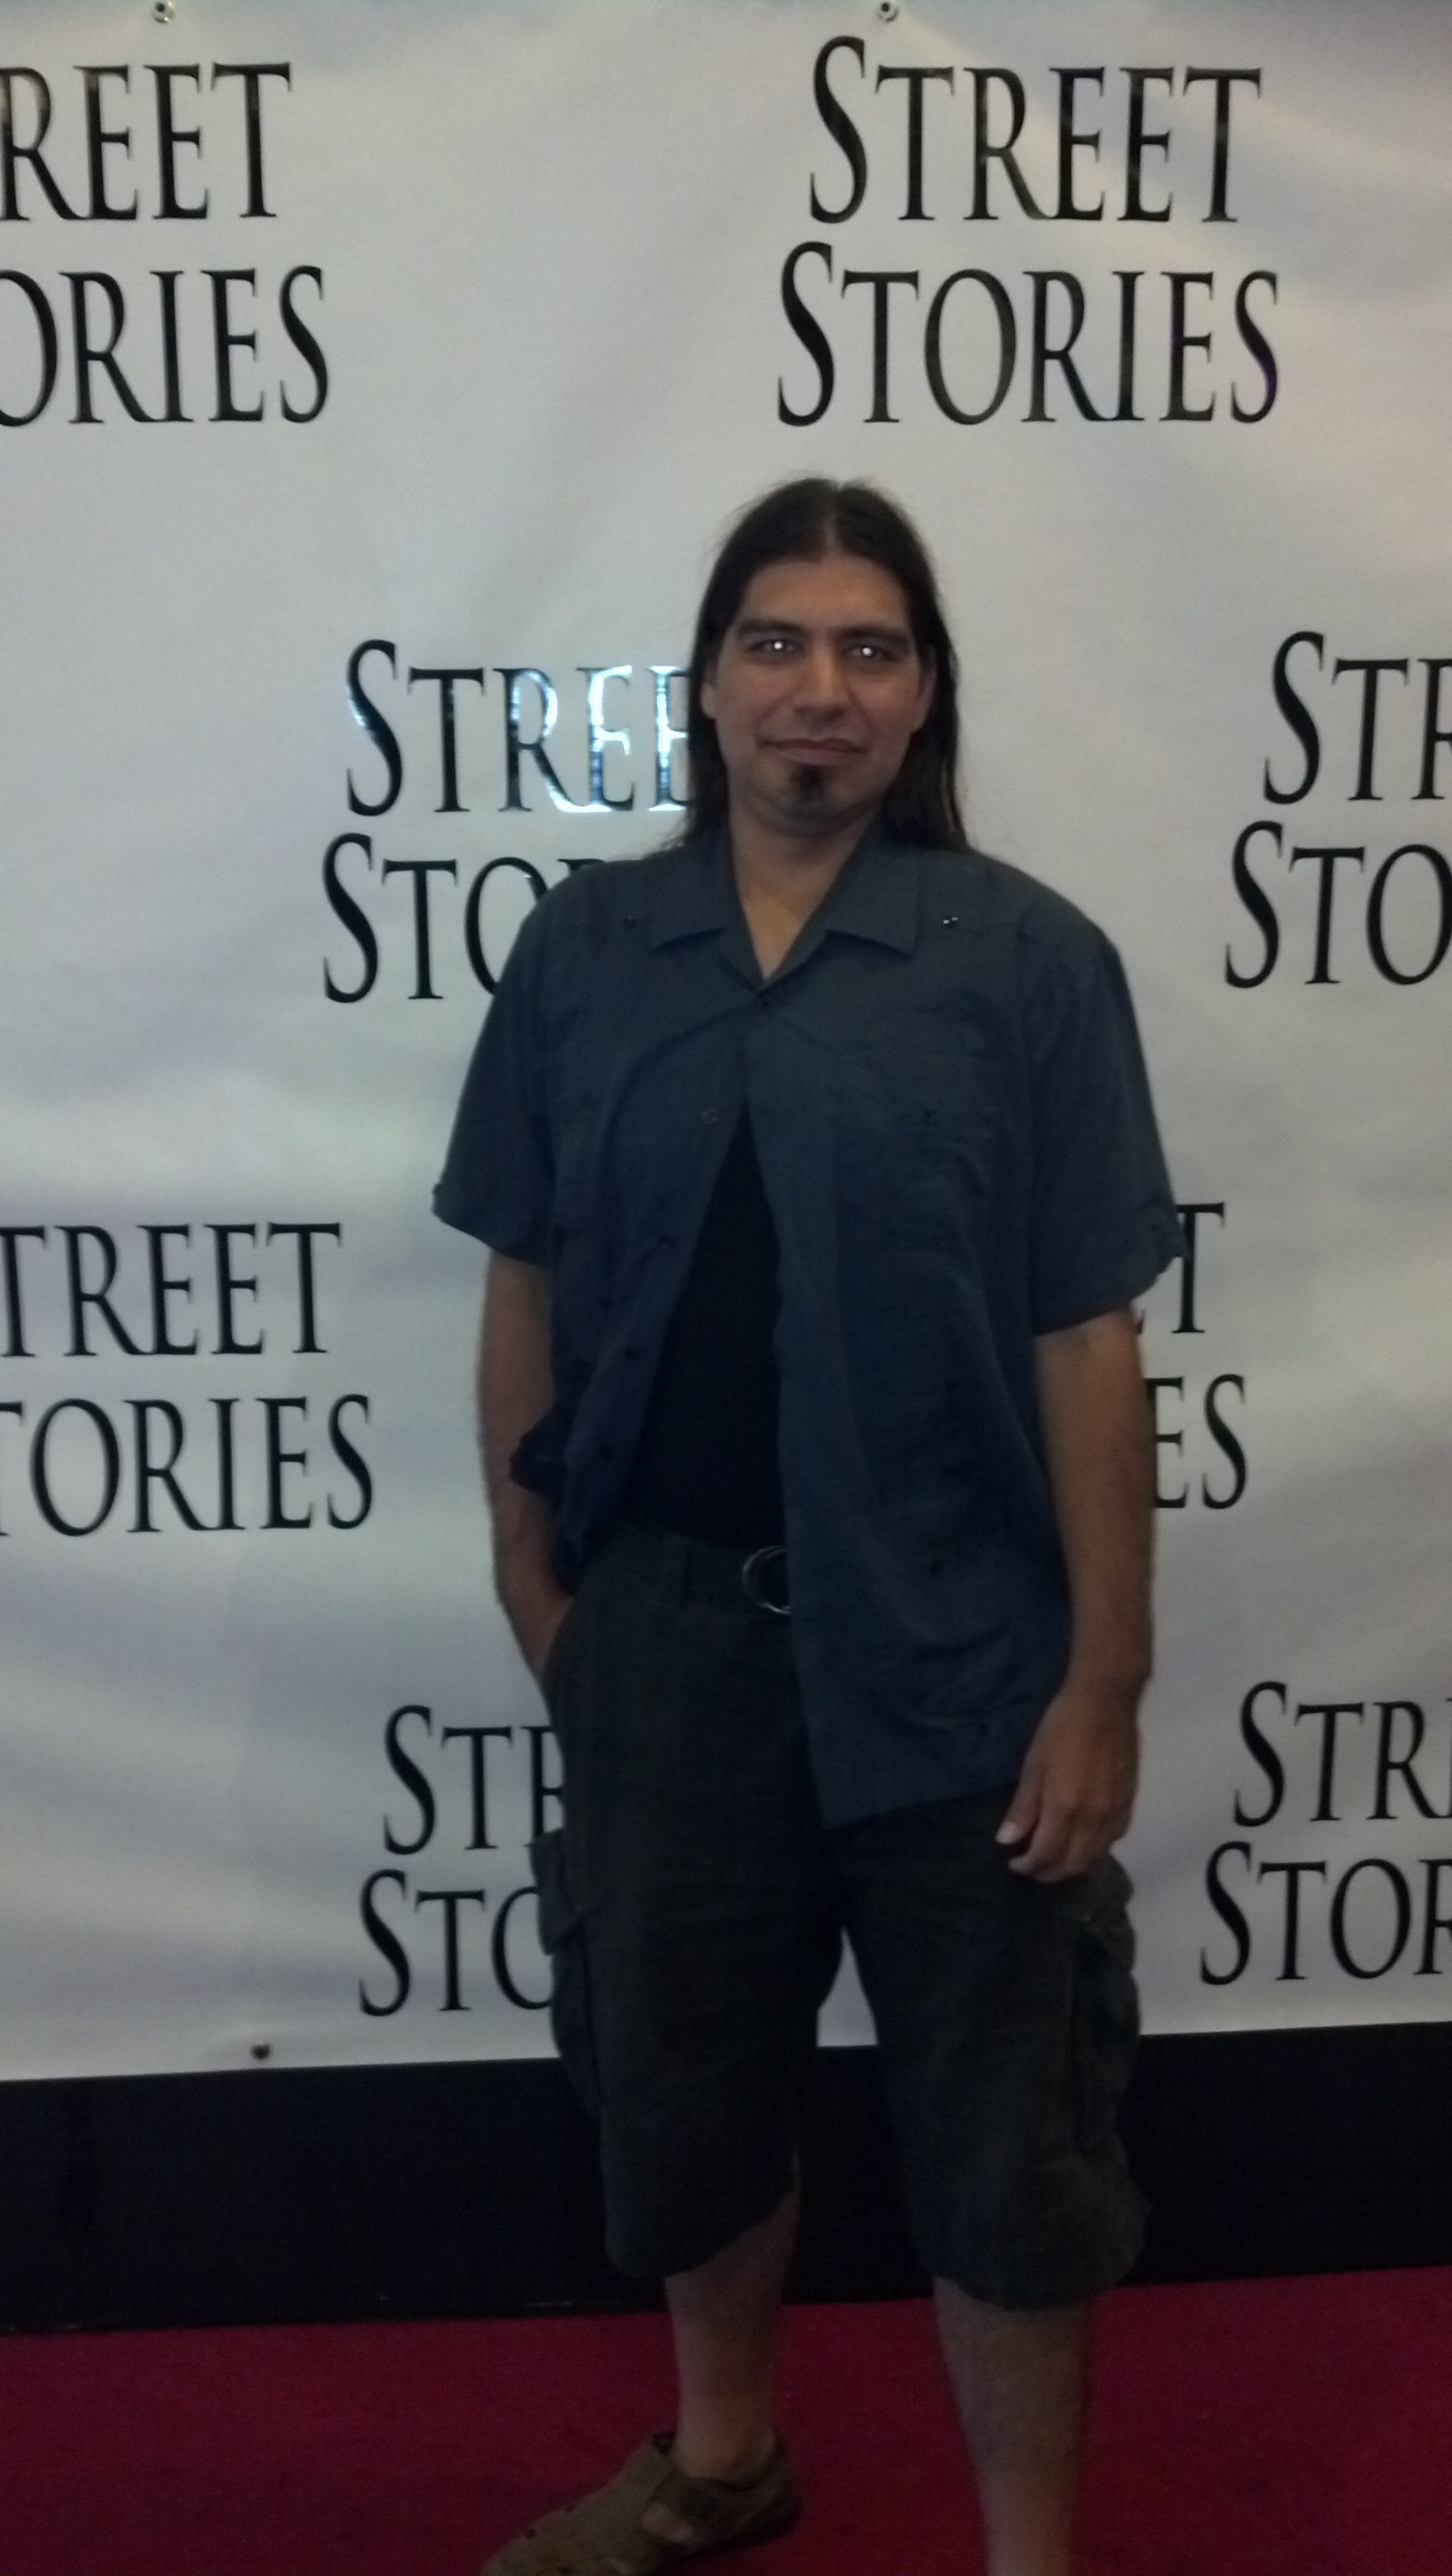 Street Stories screening